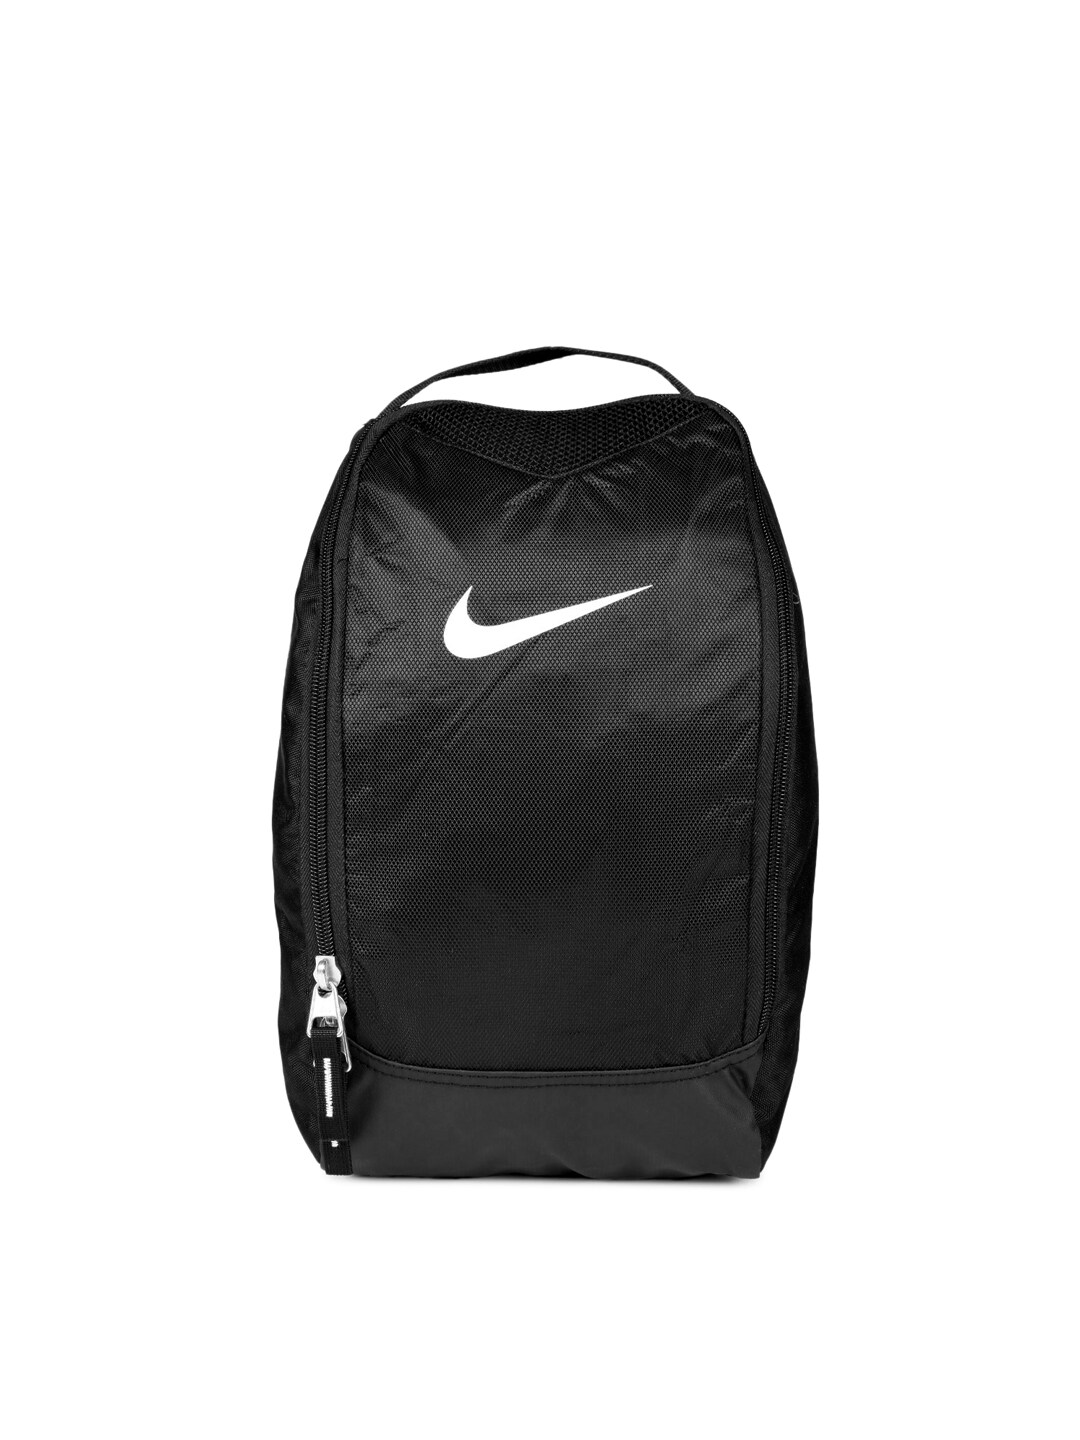 Nike Unisex Black Training Shoe Backpack